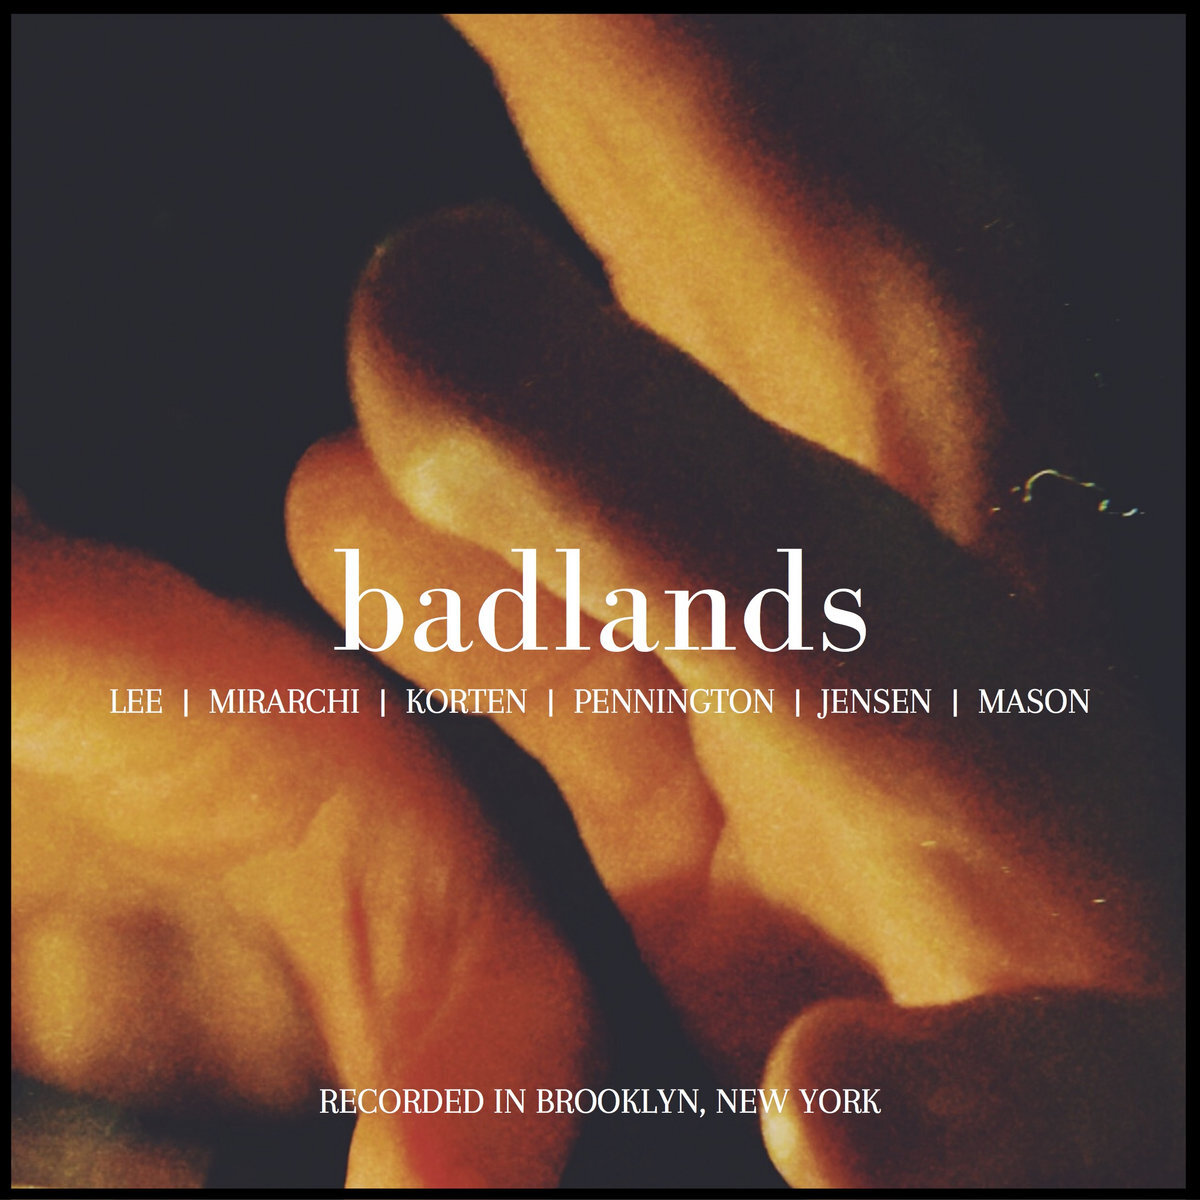 Chelsea Lee - "badlands" [Mixed (JB), Mastered (JP)]